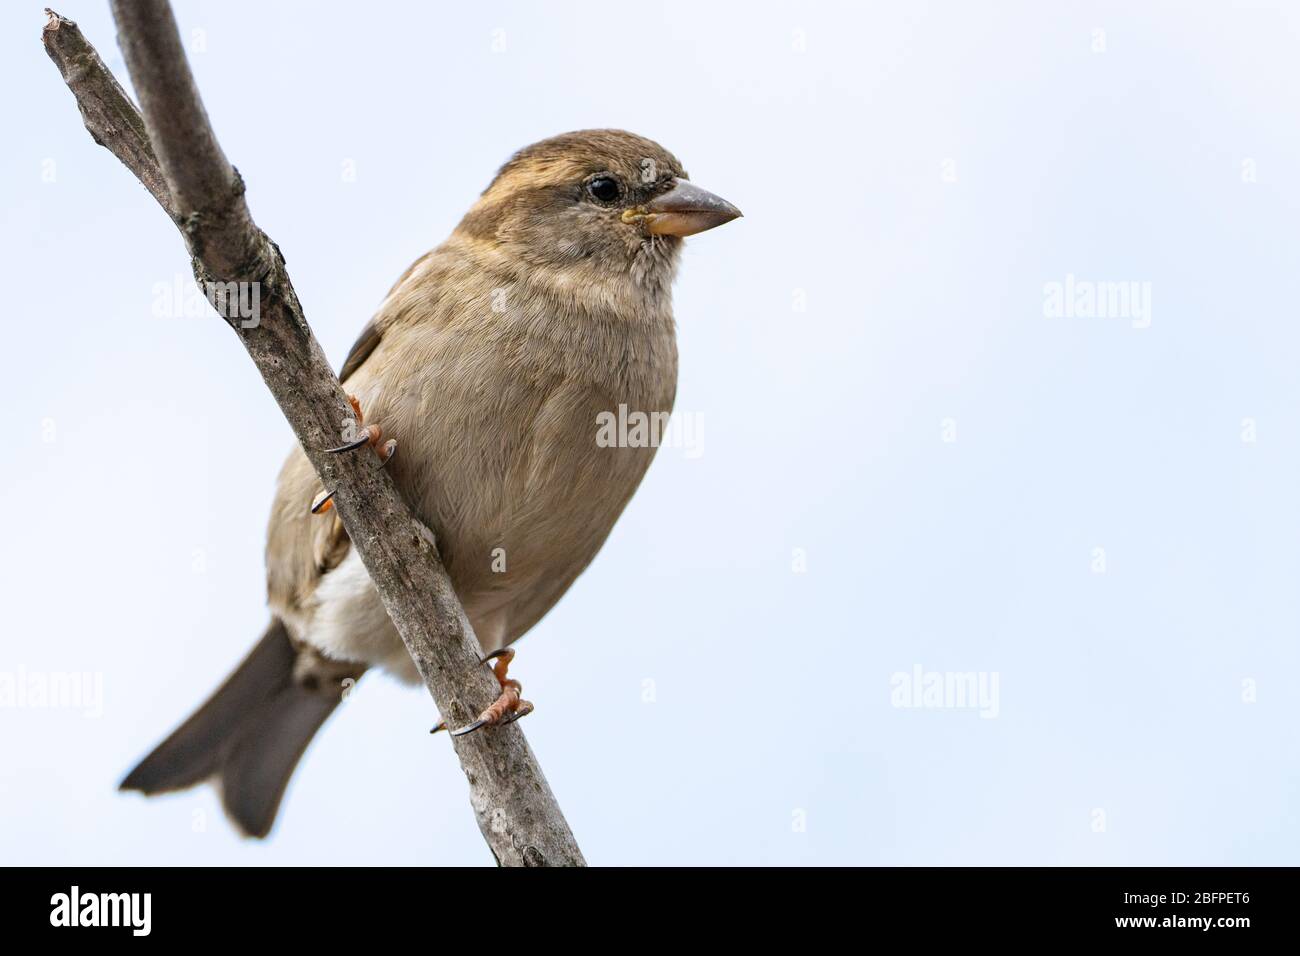 A house sparrow perched near a bird feeder in a backyard Stock Photo